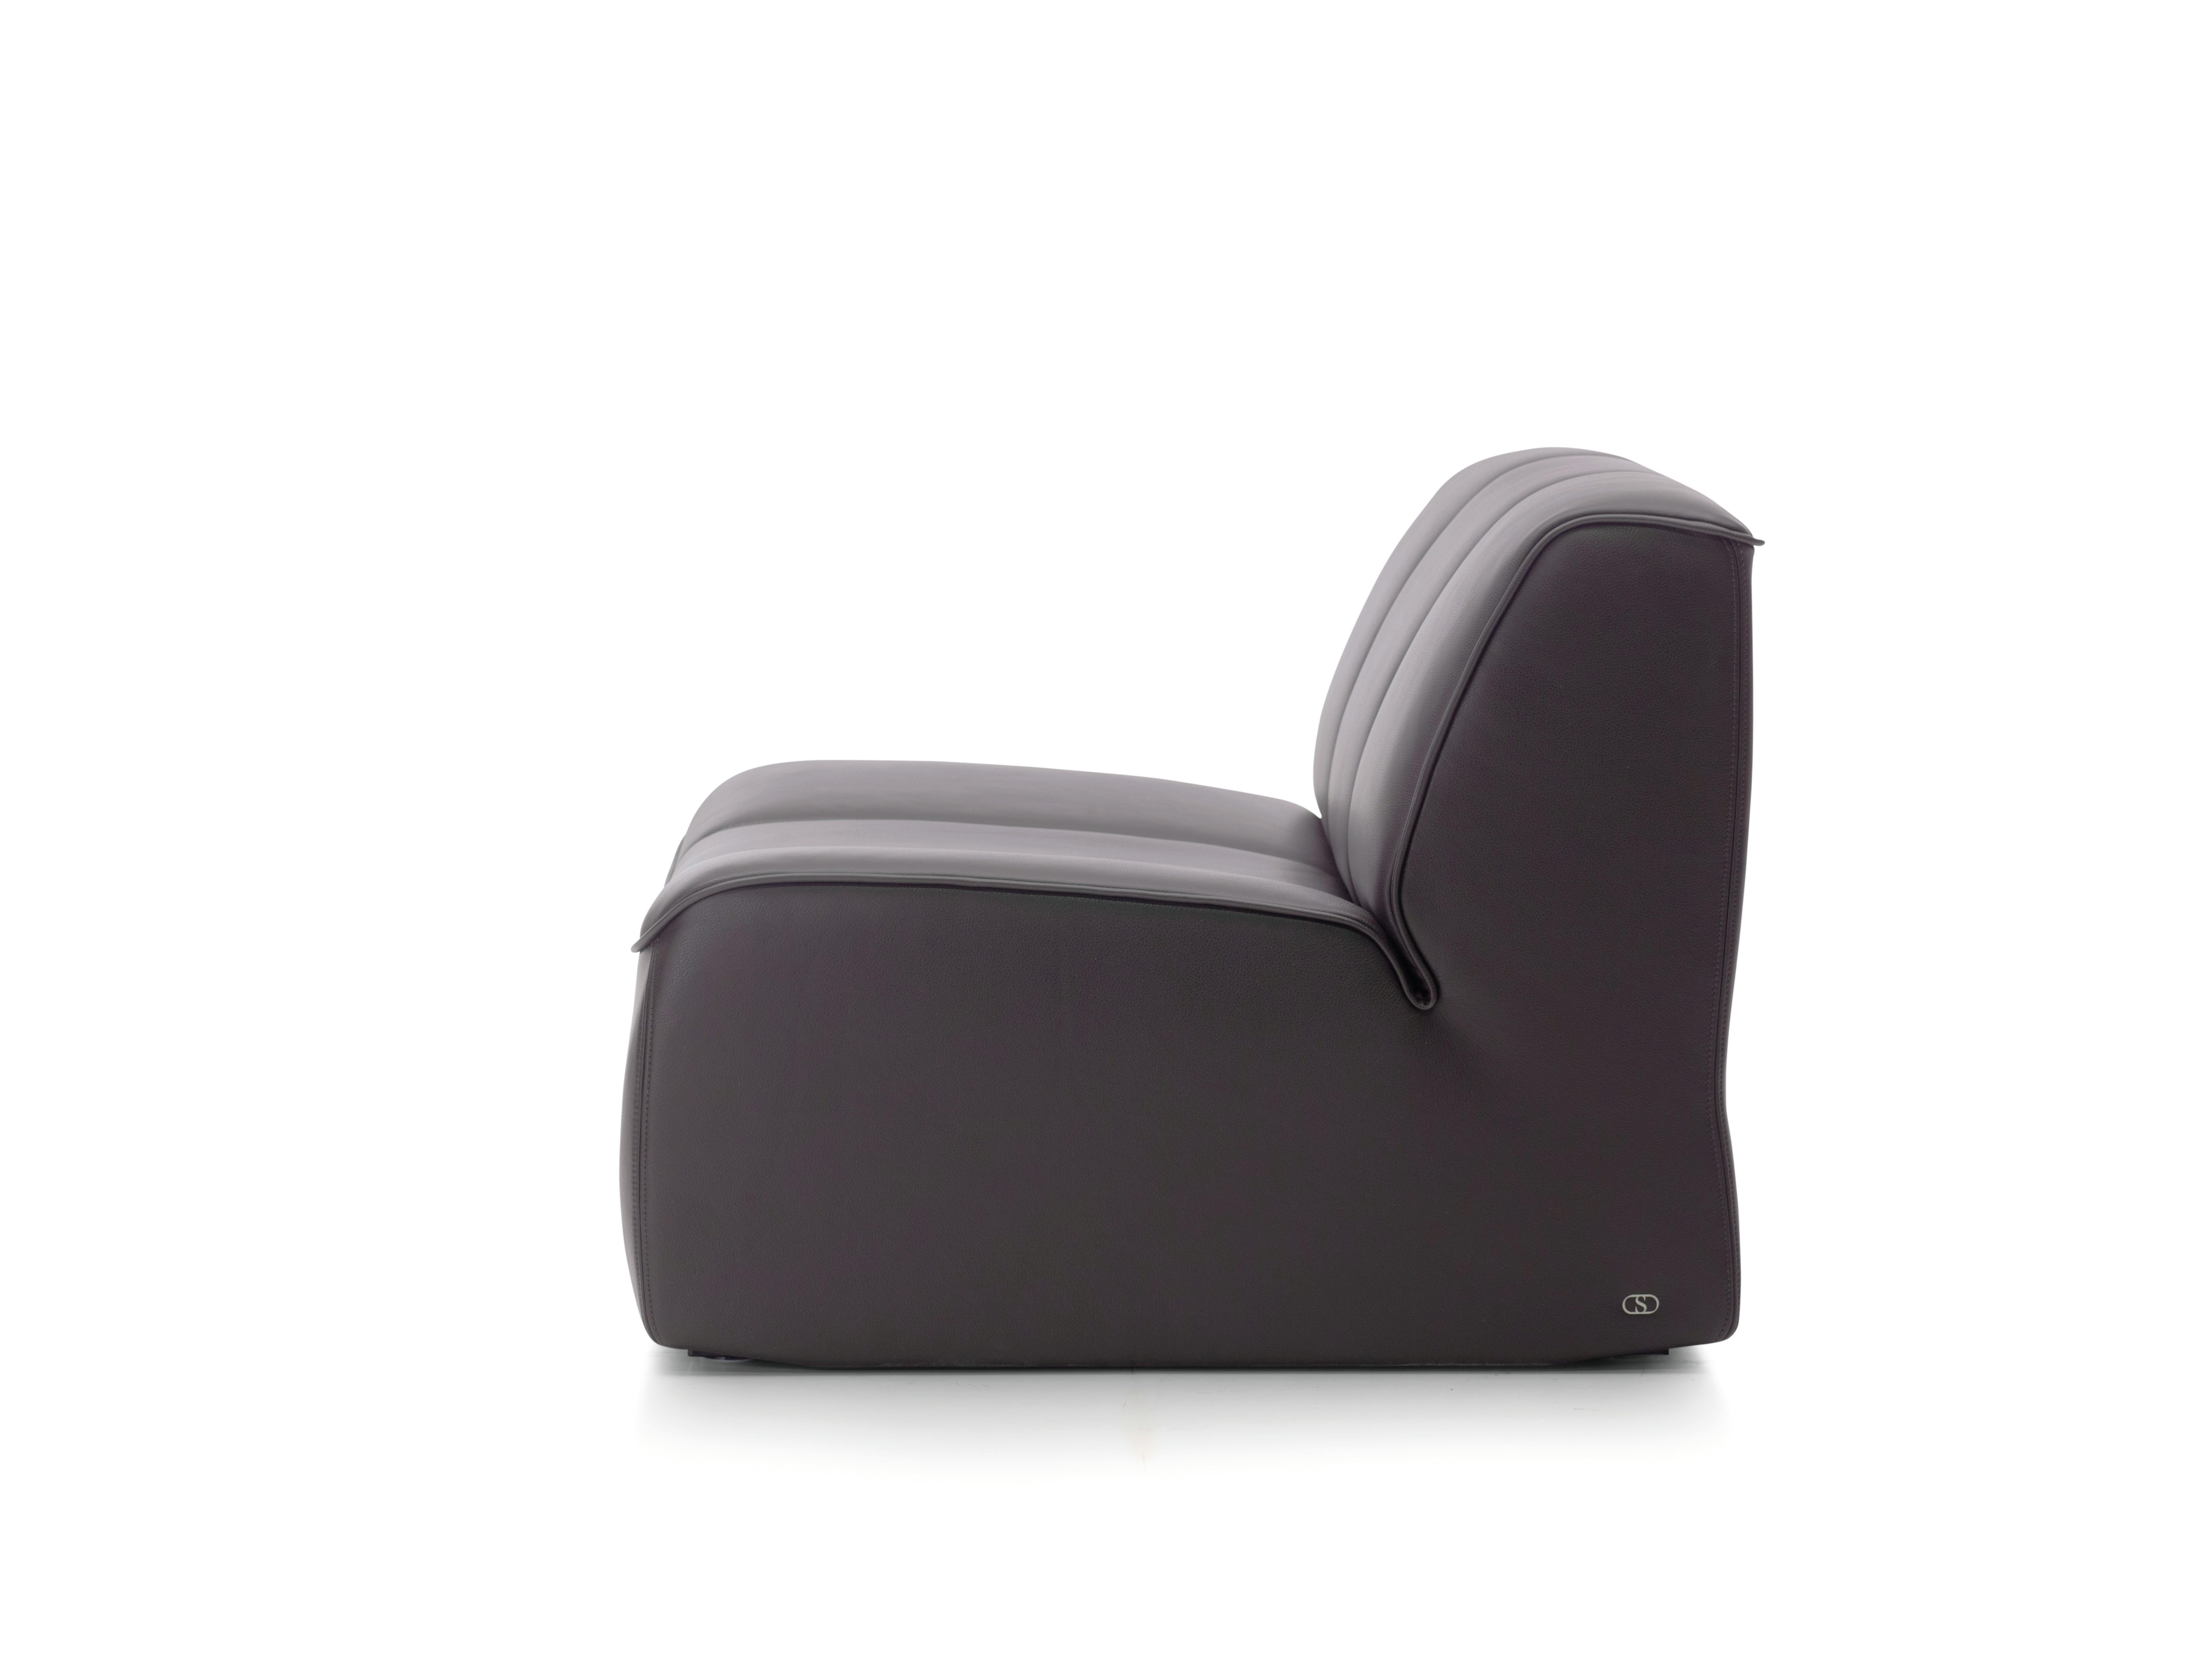 Ob als Sessel oder als Sofa, die statische Position des DS-910 demonstriert die hohe Qualität der Schweizer Handwerkskunst. Ob als Einzelstück oder Sitzgruppe, alle Komponenten vermitteln in jeder Umgebung eine organische Anmutung - und die optische